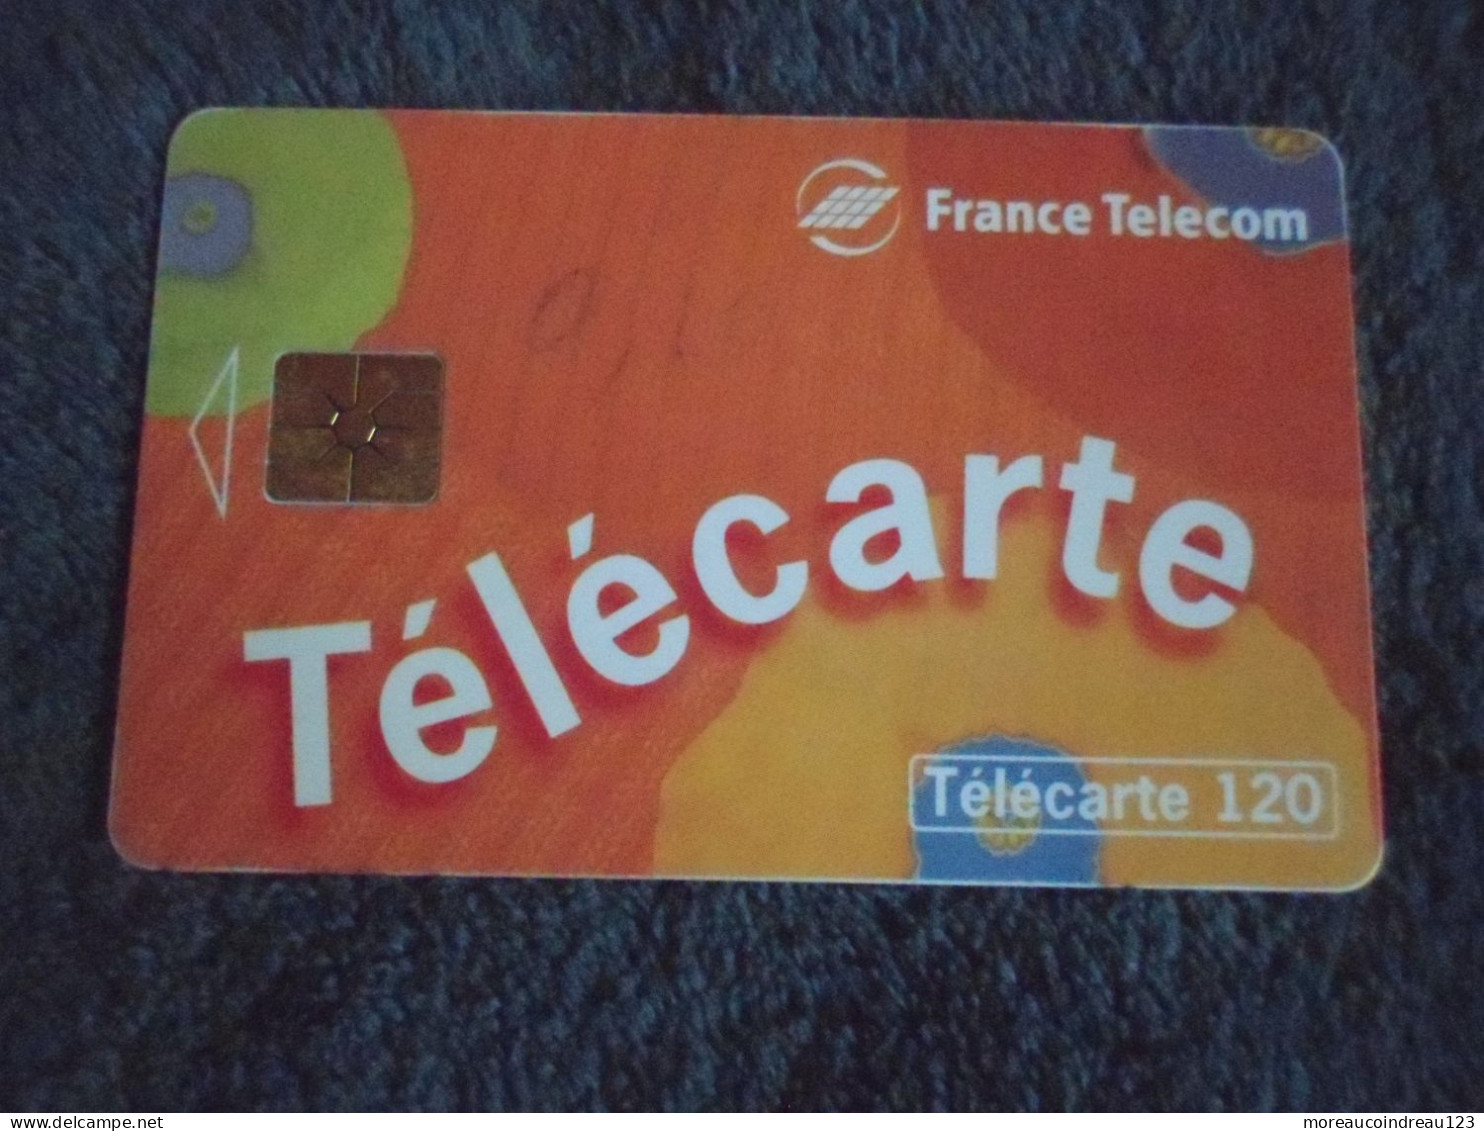 Télécarte France Télécom Pour Appeler Chez Vous - Telecom Operators